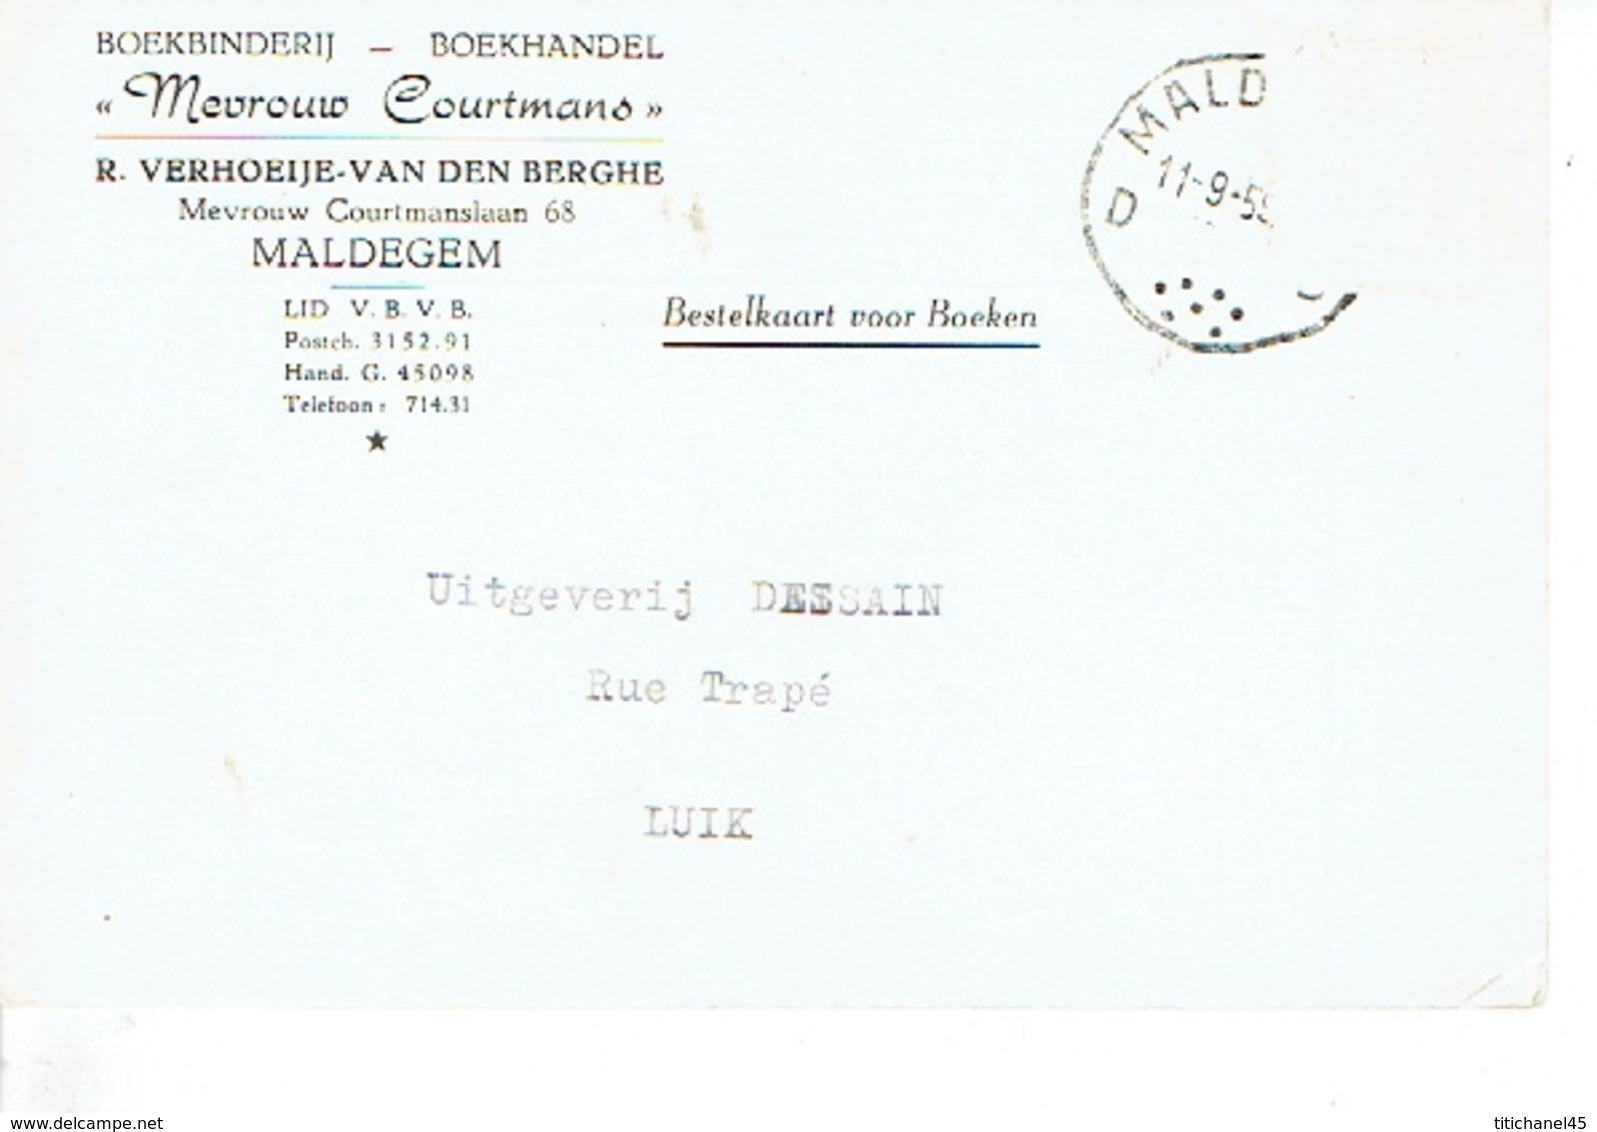 PK Publicitaire MALDEGEM 1959 - "MEVROUW COURTMANS" R. VERHOEIJE-VAN DEN BERGHE - Boekbinderij - Boekhandel - Maldegem